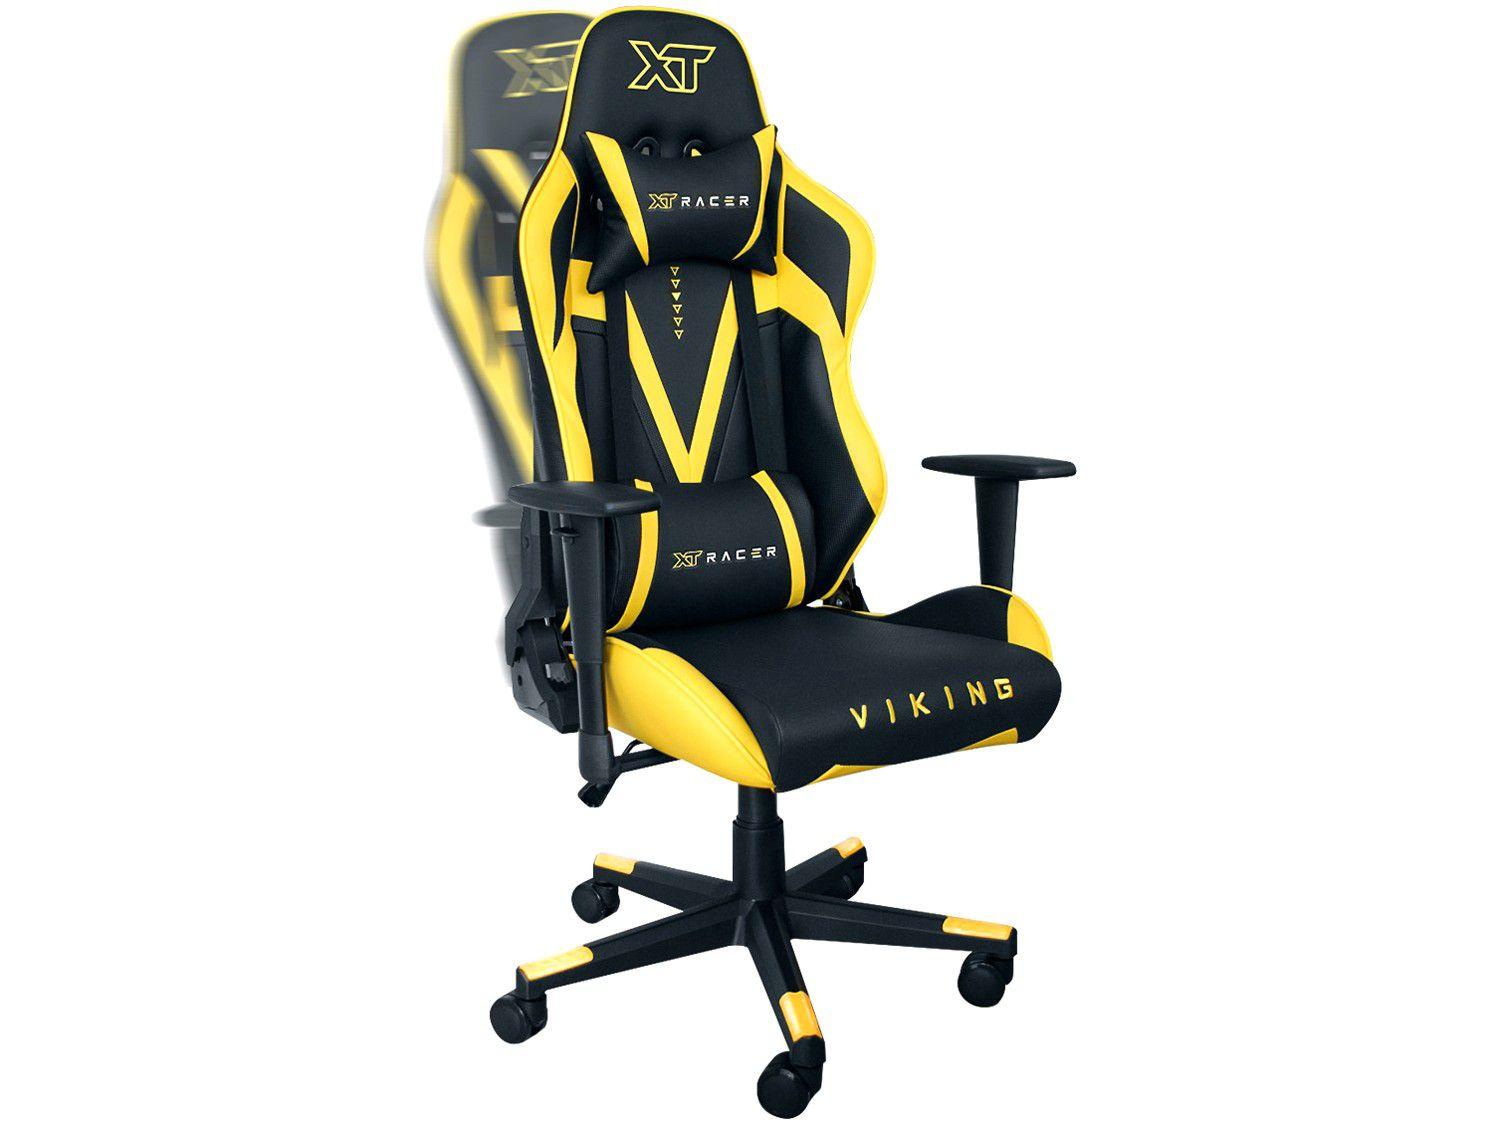 Cadeira Gamer XT Racer, Reclinável, Preto e Amarelo, Viking Series - XTR-011